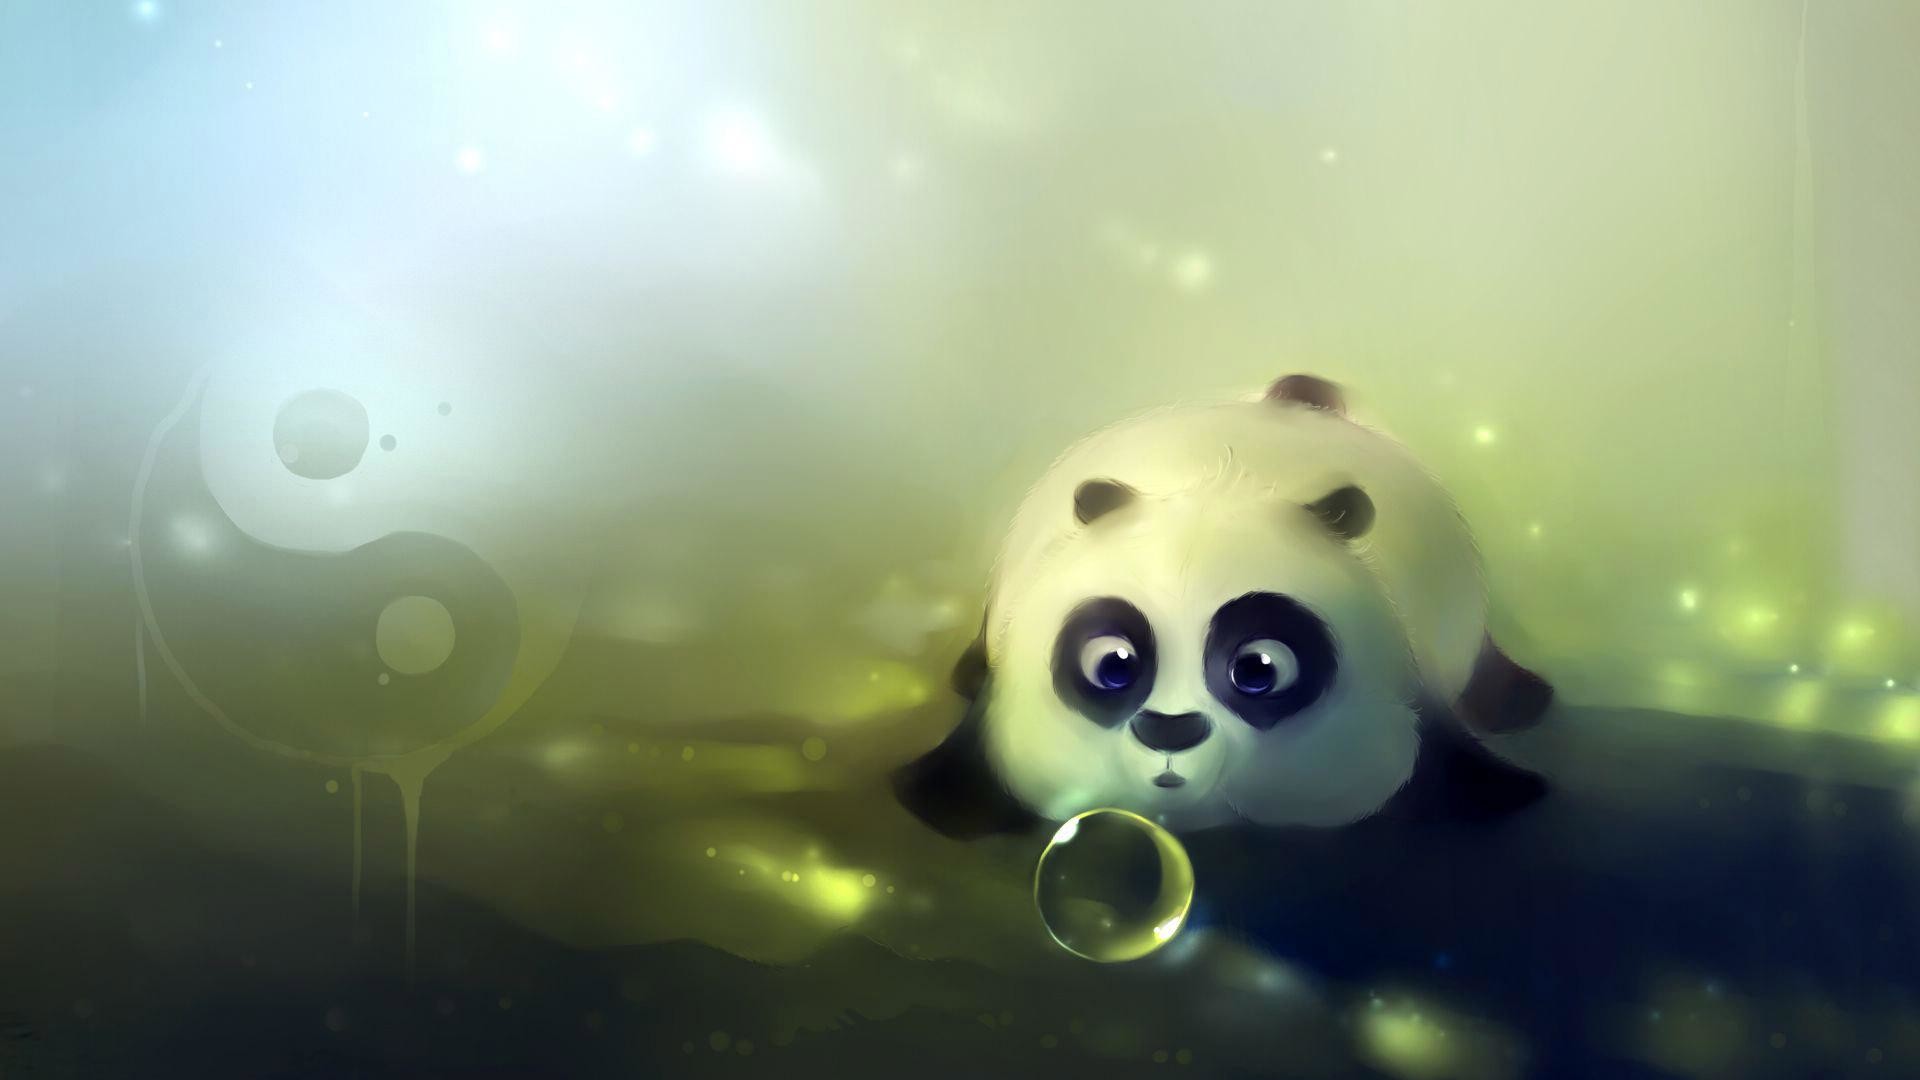 1920x1080 ... panda cartoon wallpaper hd image gallery hcpr; cute ...